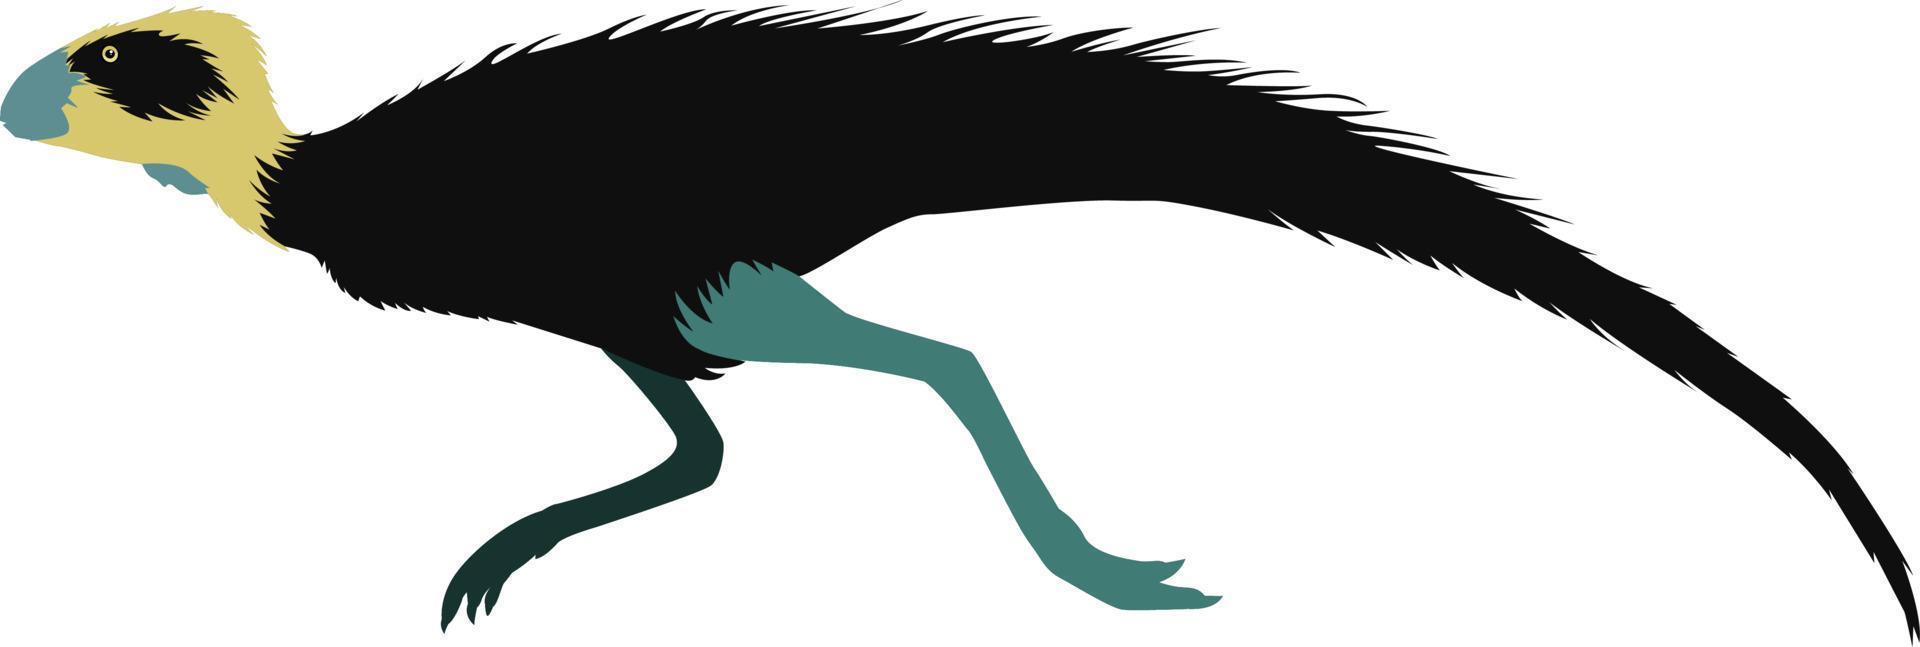 Pisanosaurus, illustration, vector on white background.